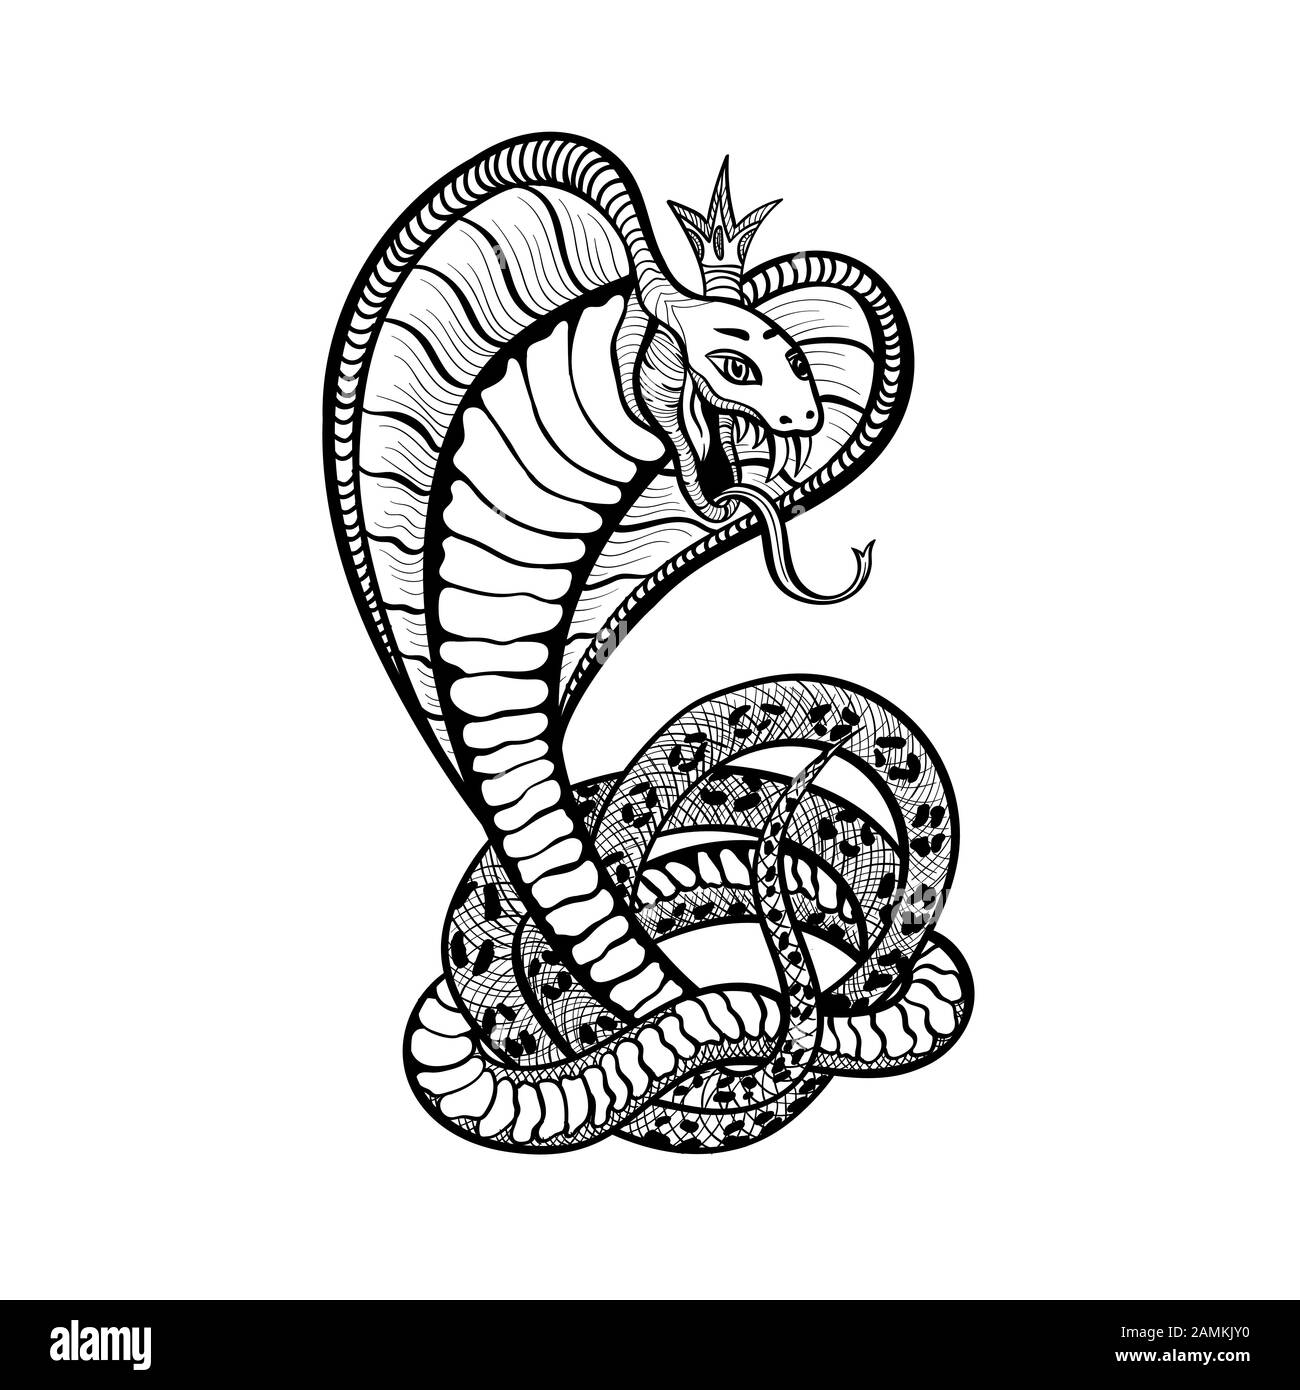 Disegno d'arte del tatuaggio del serpente, vipera del cobra del vettore nella corona reale con la lingua e i fangs. Serpente vipera disegnato a mano o serpente rattlesnake in anelli, modello di stampa t-shirt e segno club biker Illustrazione Vettoriale